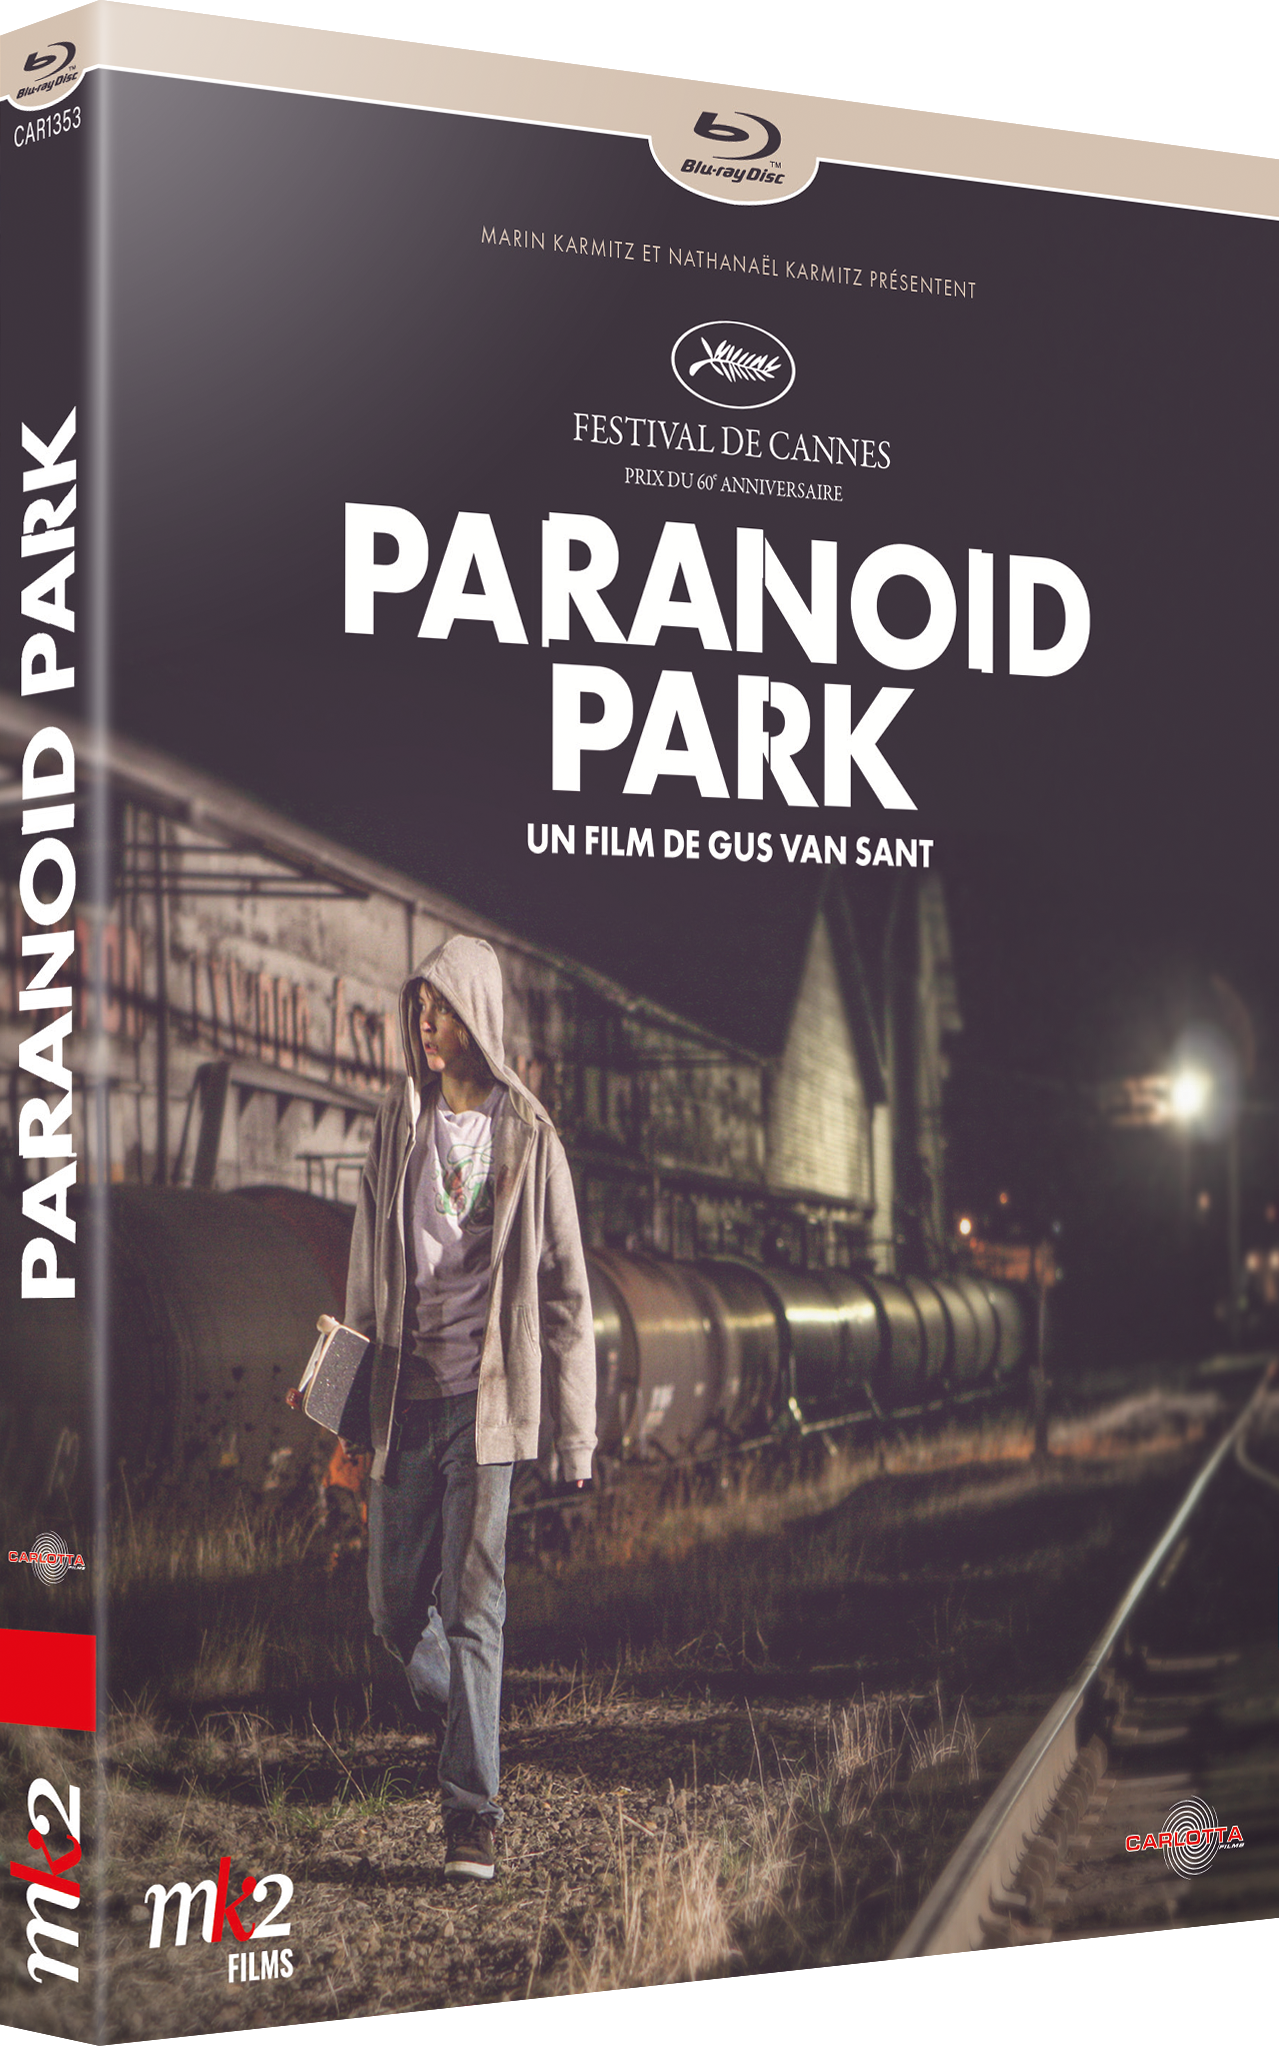 Paranoid Park by Gus Van Sant